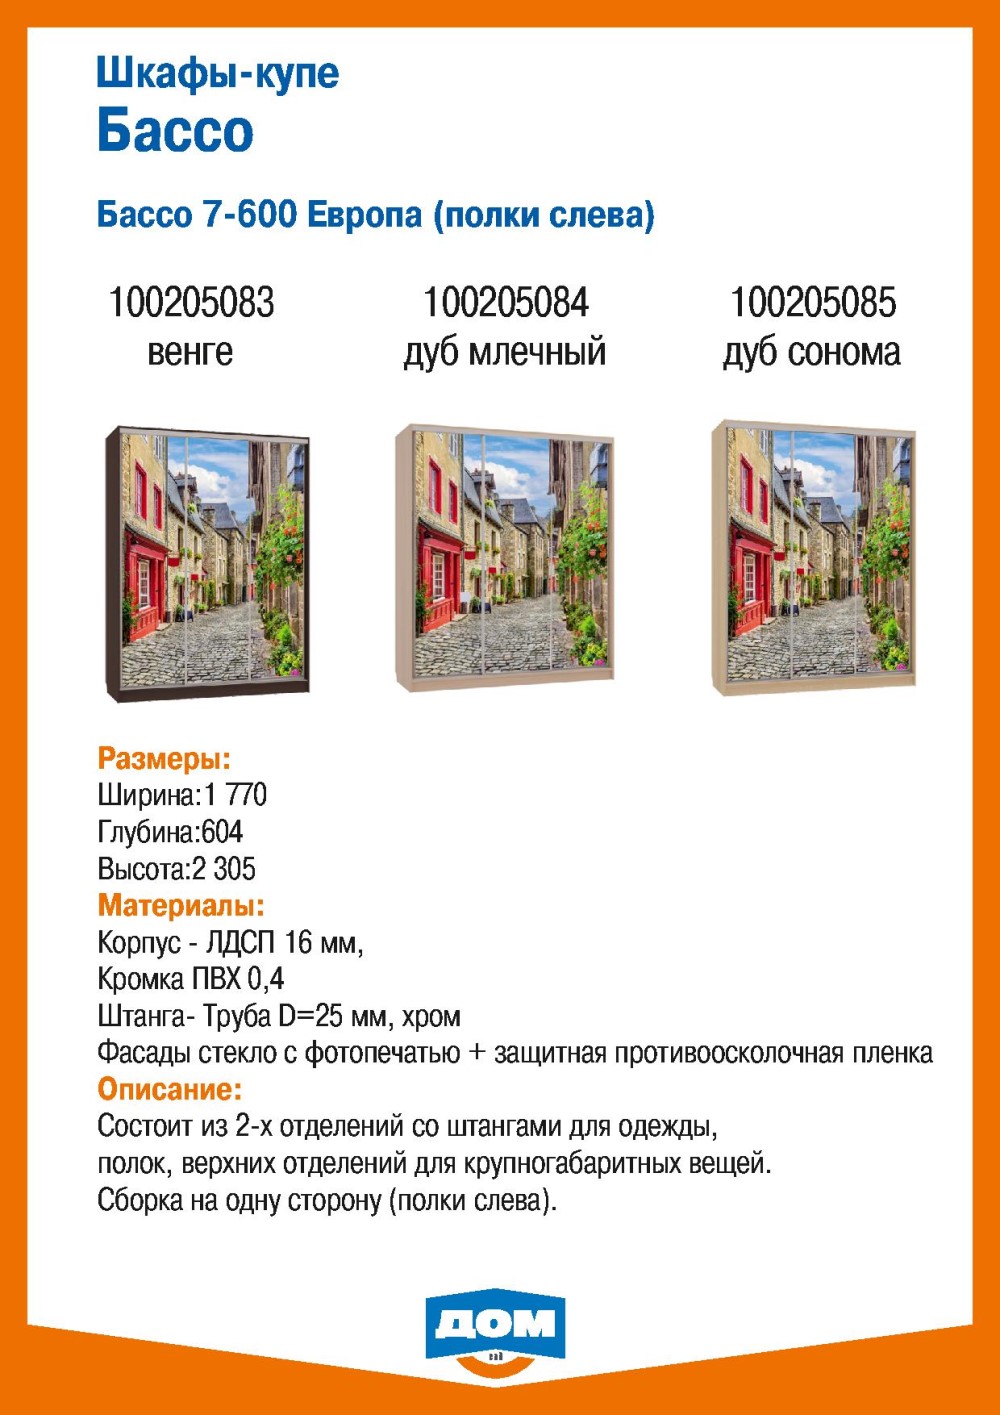 акции и скидки в каталоге товаров магазина ДОМ города Челябинск